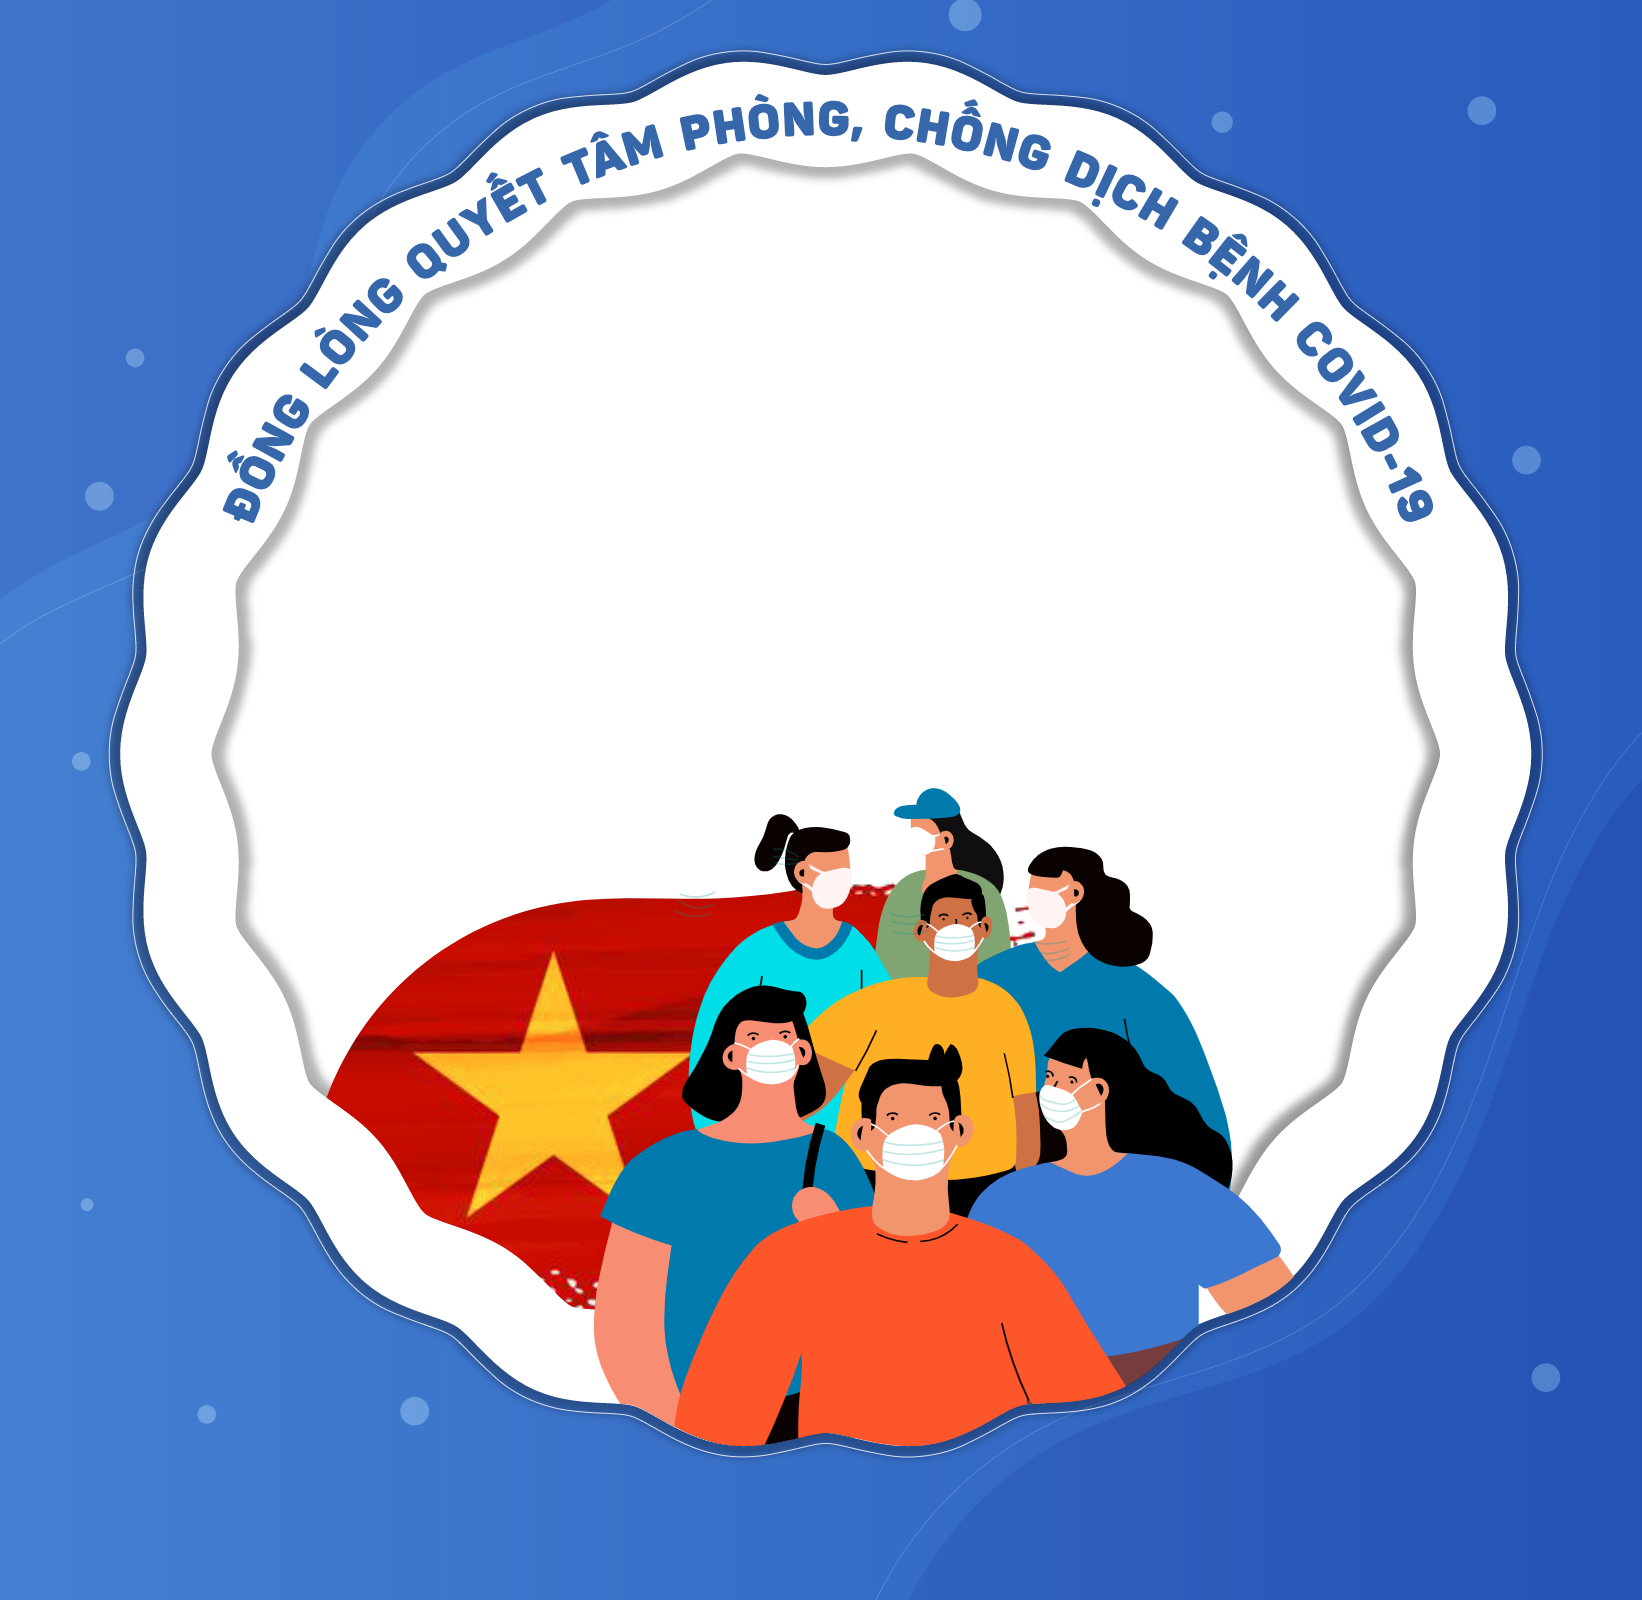 Đánh dấu năm 2024 với việc đổi avatar đặc trưng của Việt Nam. Hãy khoe cá tính của bạn và góp phần tạo ra một hình ảnh đại diện đẹp và độc đáo cho quê hương mình. Việt Nam đổi avatar cũng góp phần nâng cao nhận thức cộng đồng về văn hóa truyền thống và phẩm chất đạo đức của người Việt Nam.